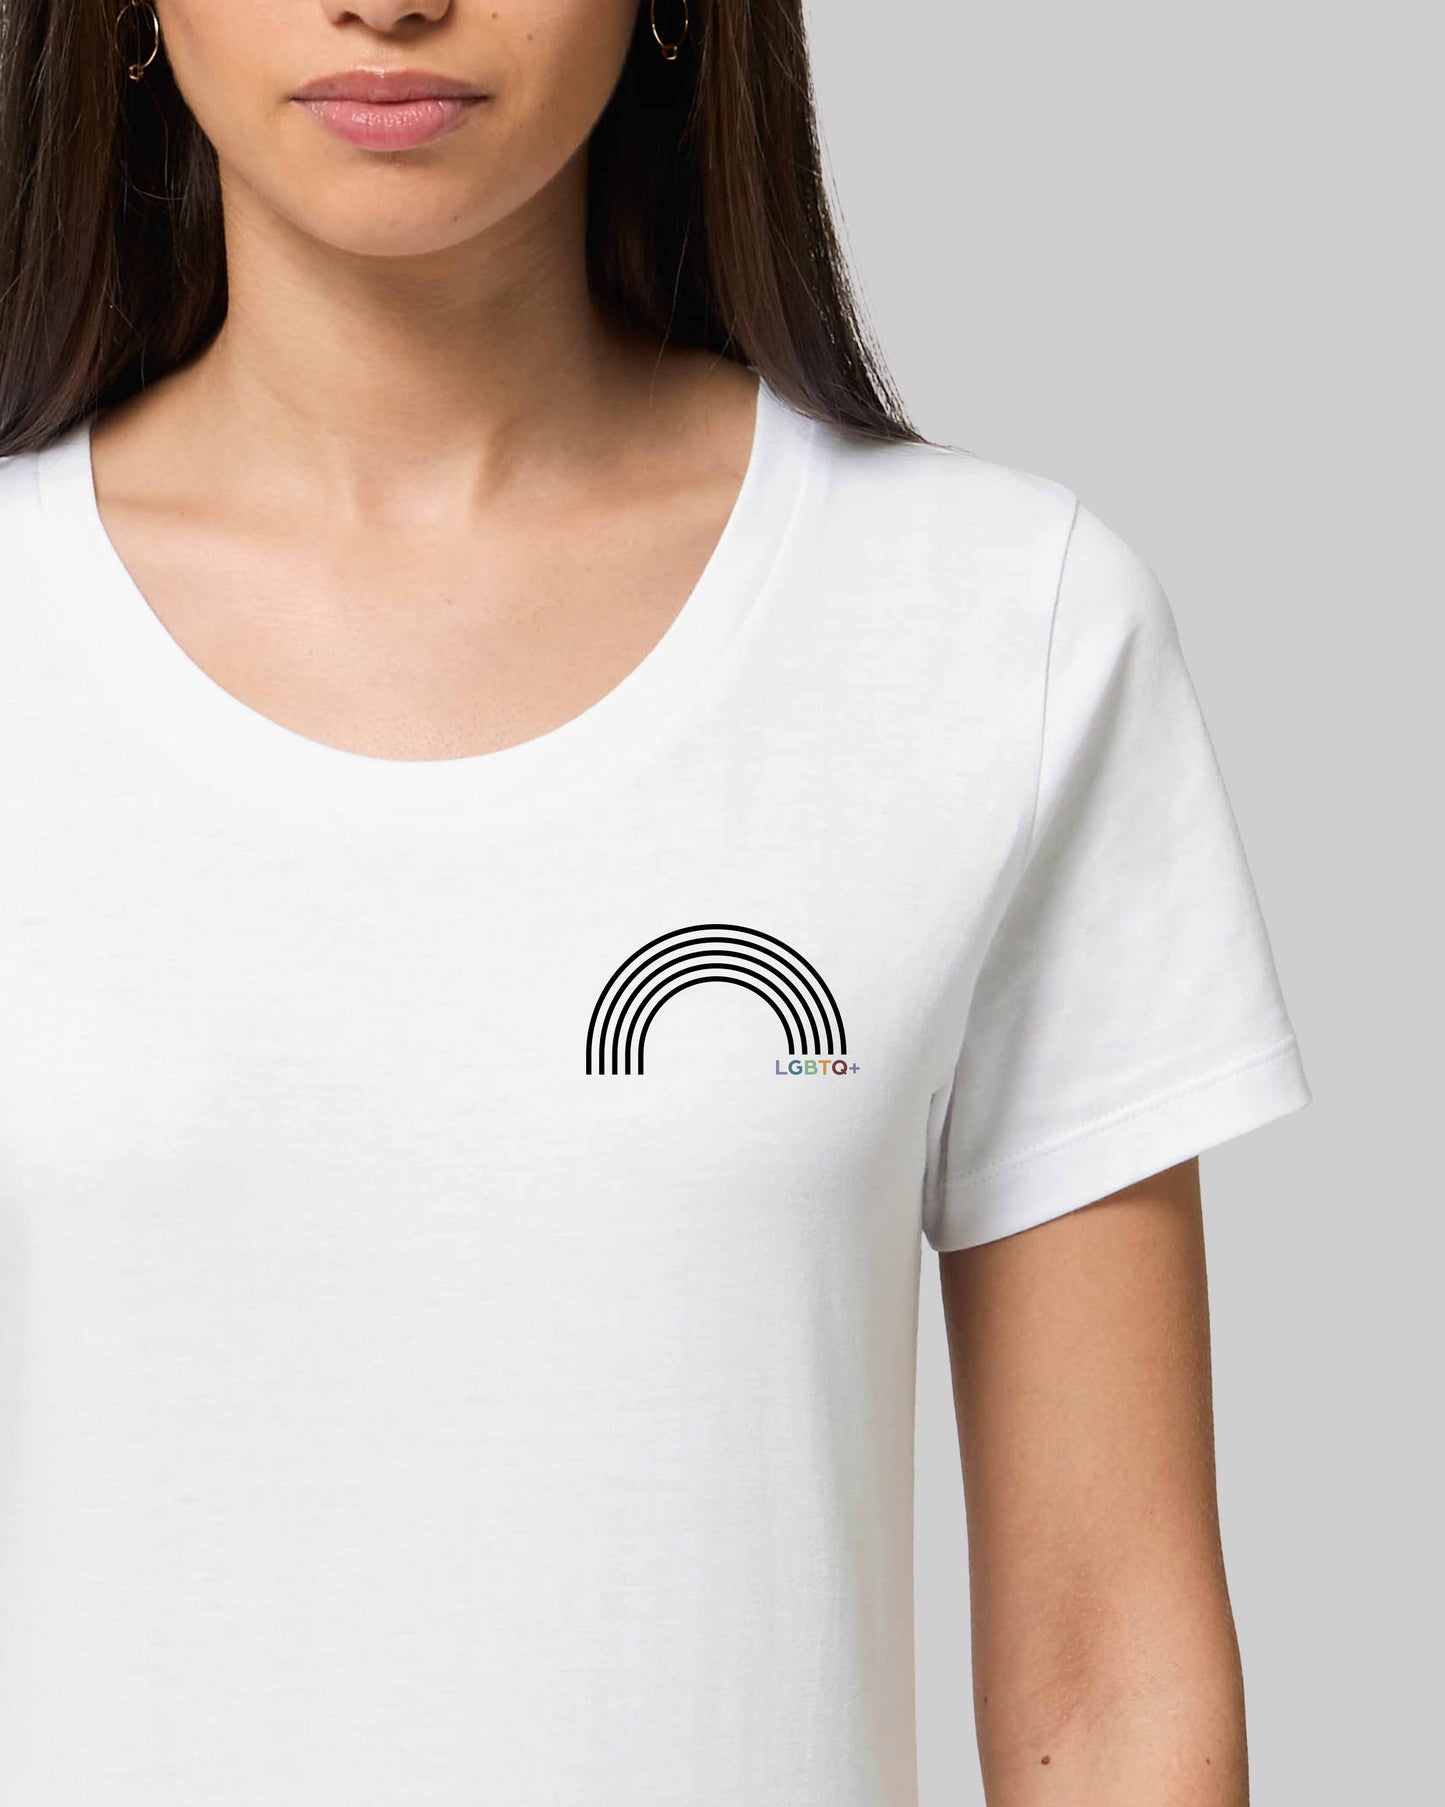 EINHORST® Organic Shirt tailliert in "Weiß" mit dem Motiv "lgbtq+ Regenbogen" in der Kombination schwarzer Regenbogen mit bunter Schrift, Bild von weiblicher Person mit Shirt